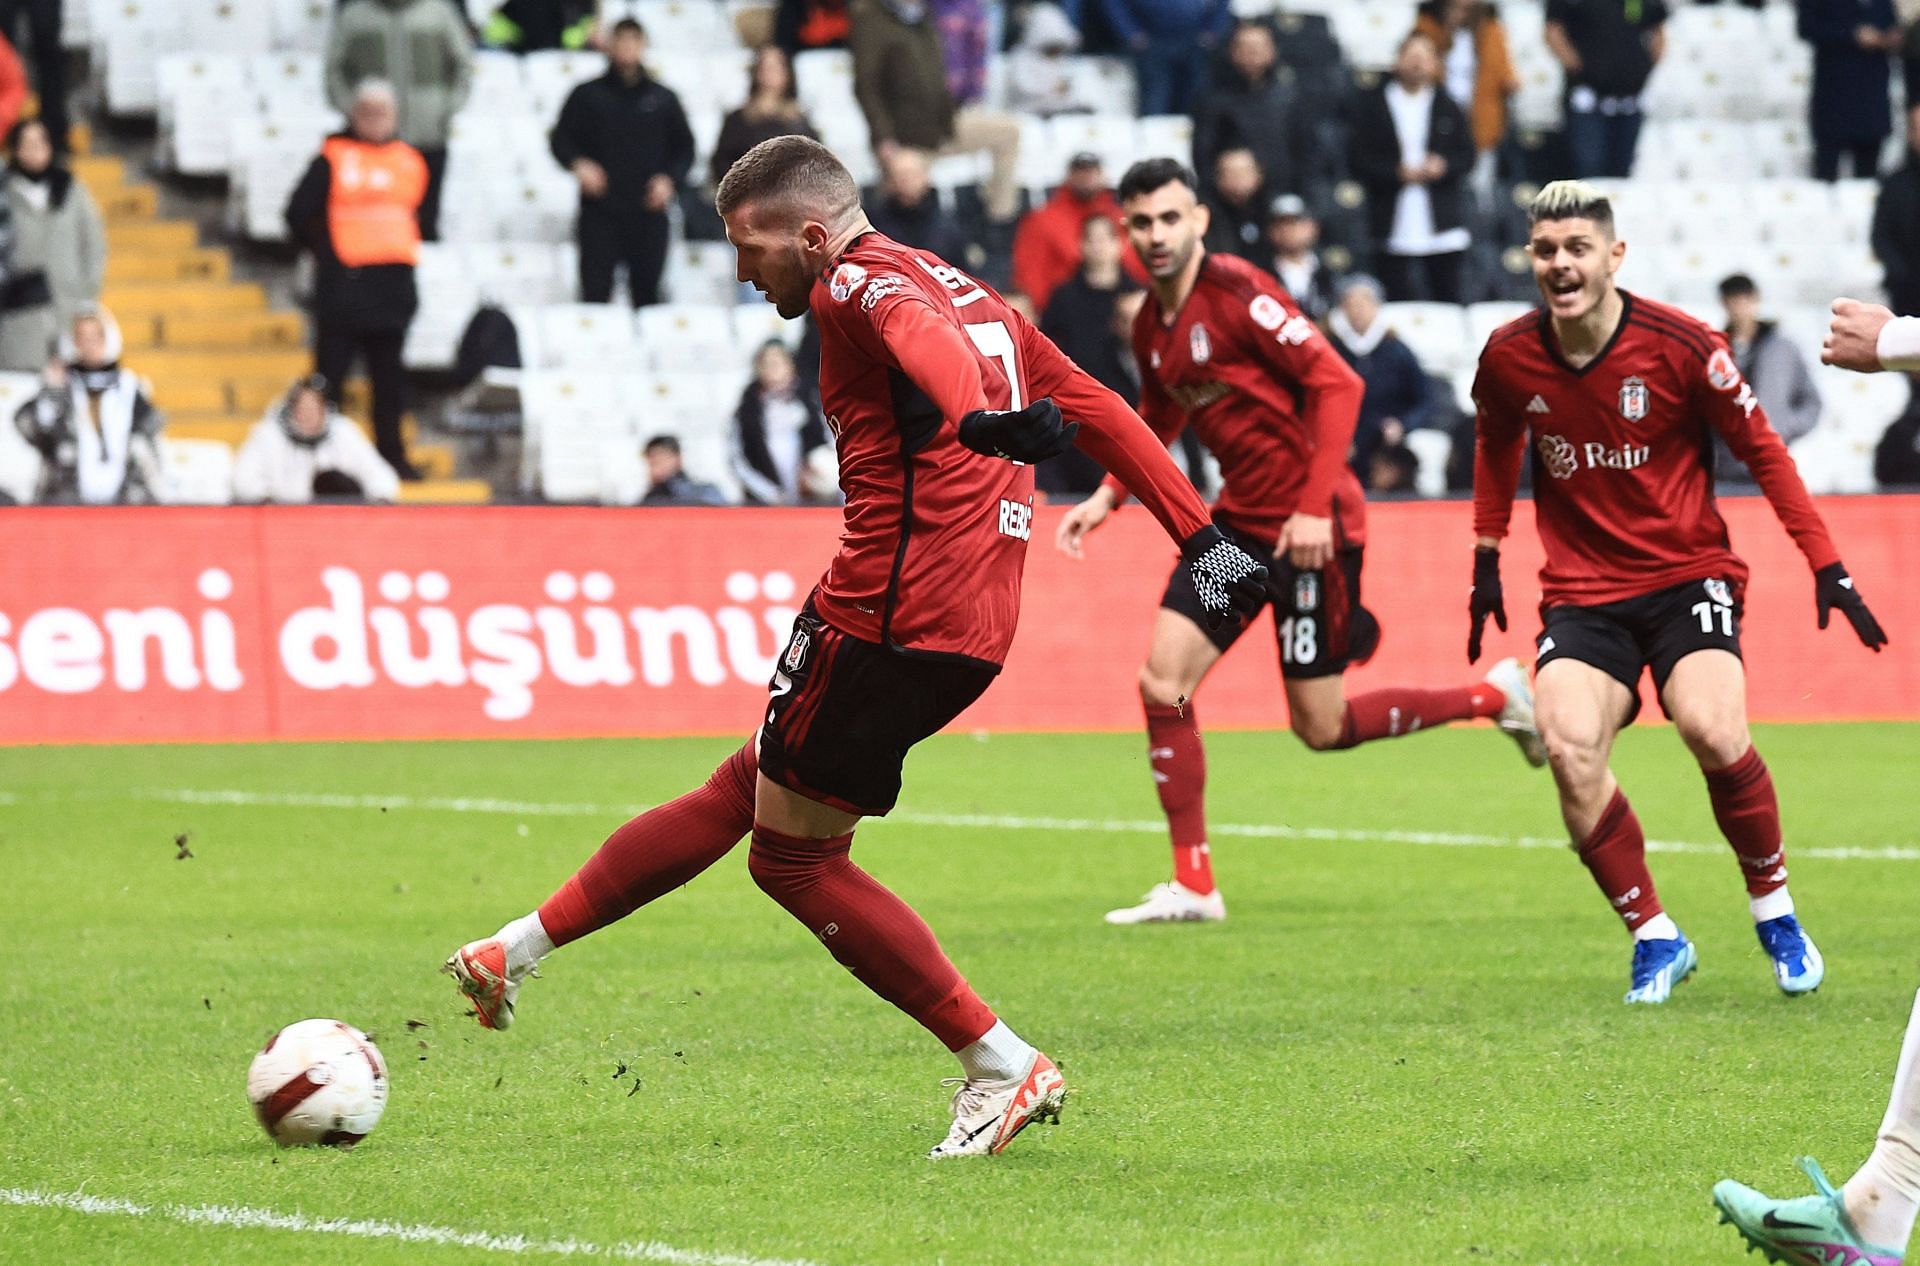 Besiktas face Sivasspor on Sunday 